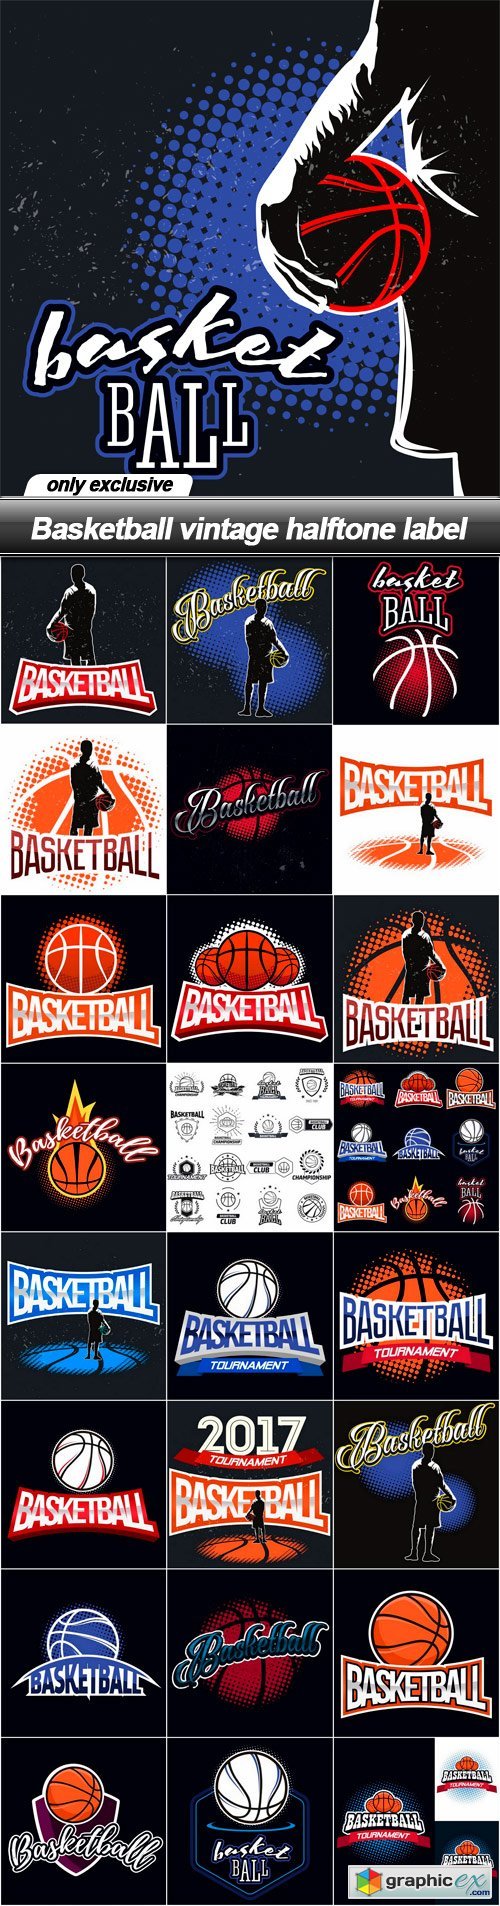 Basketball vintage halftone label - 25 EPS